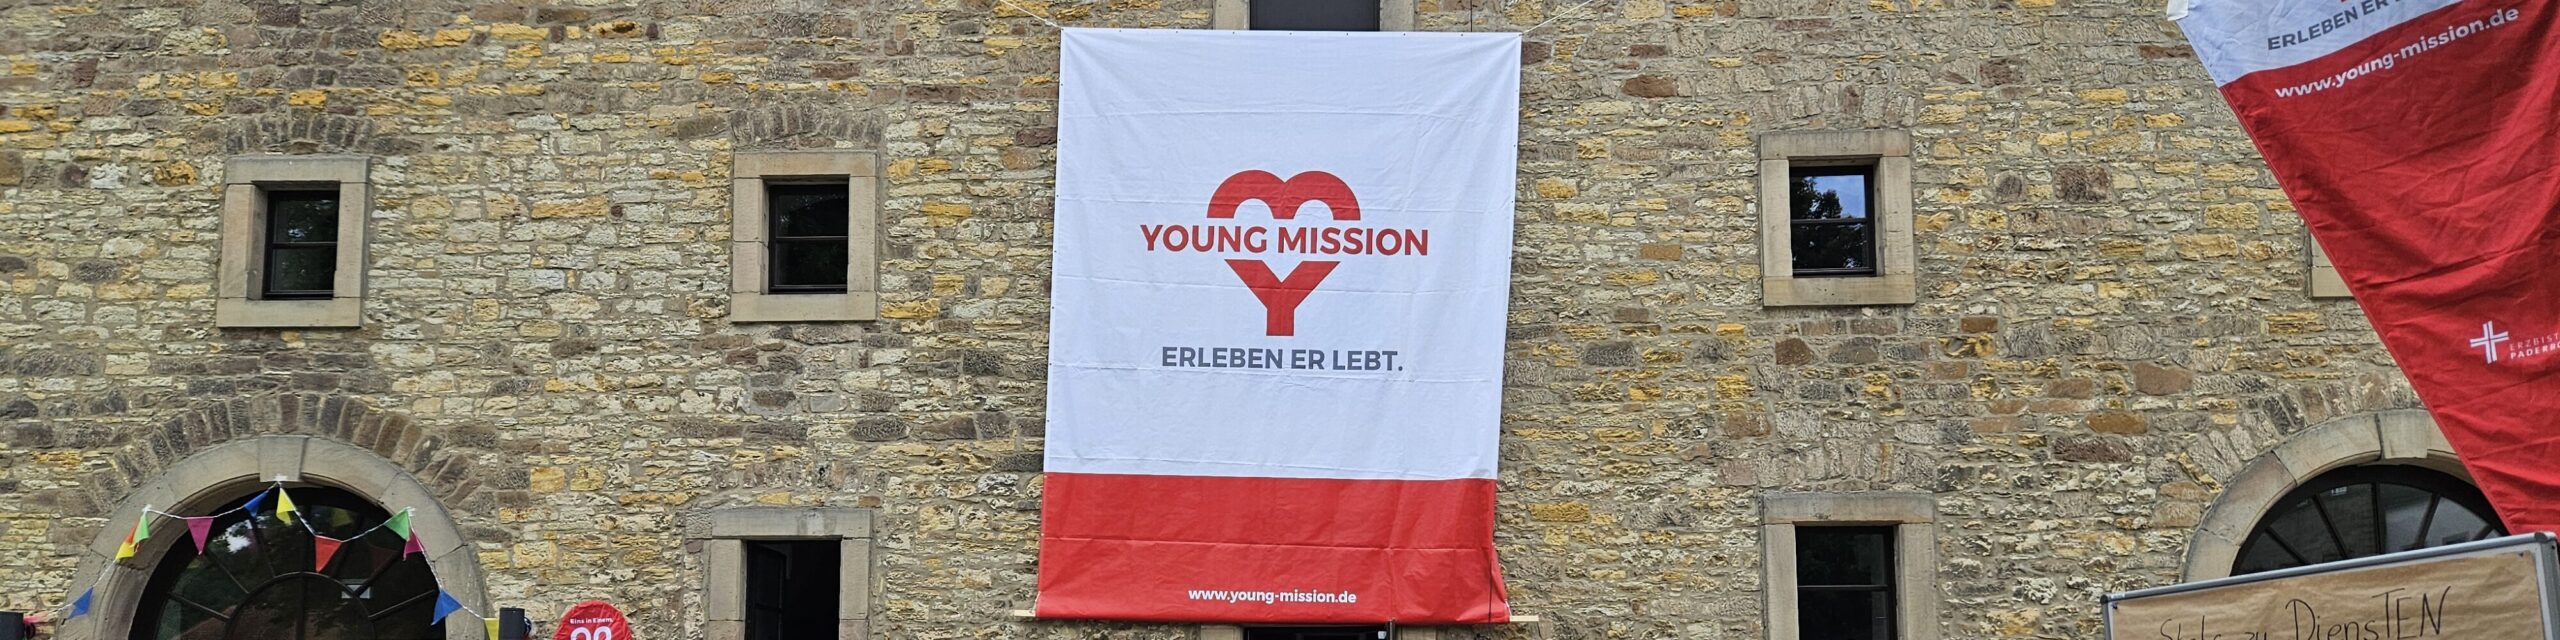 Die Hauswand eines Gebäudes mit dem Banner von Young Mission.